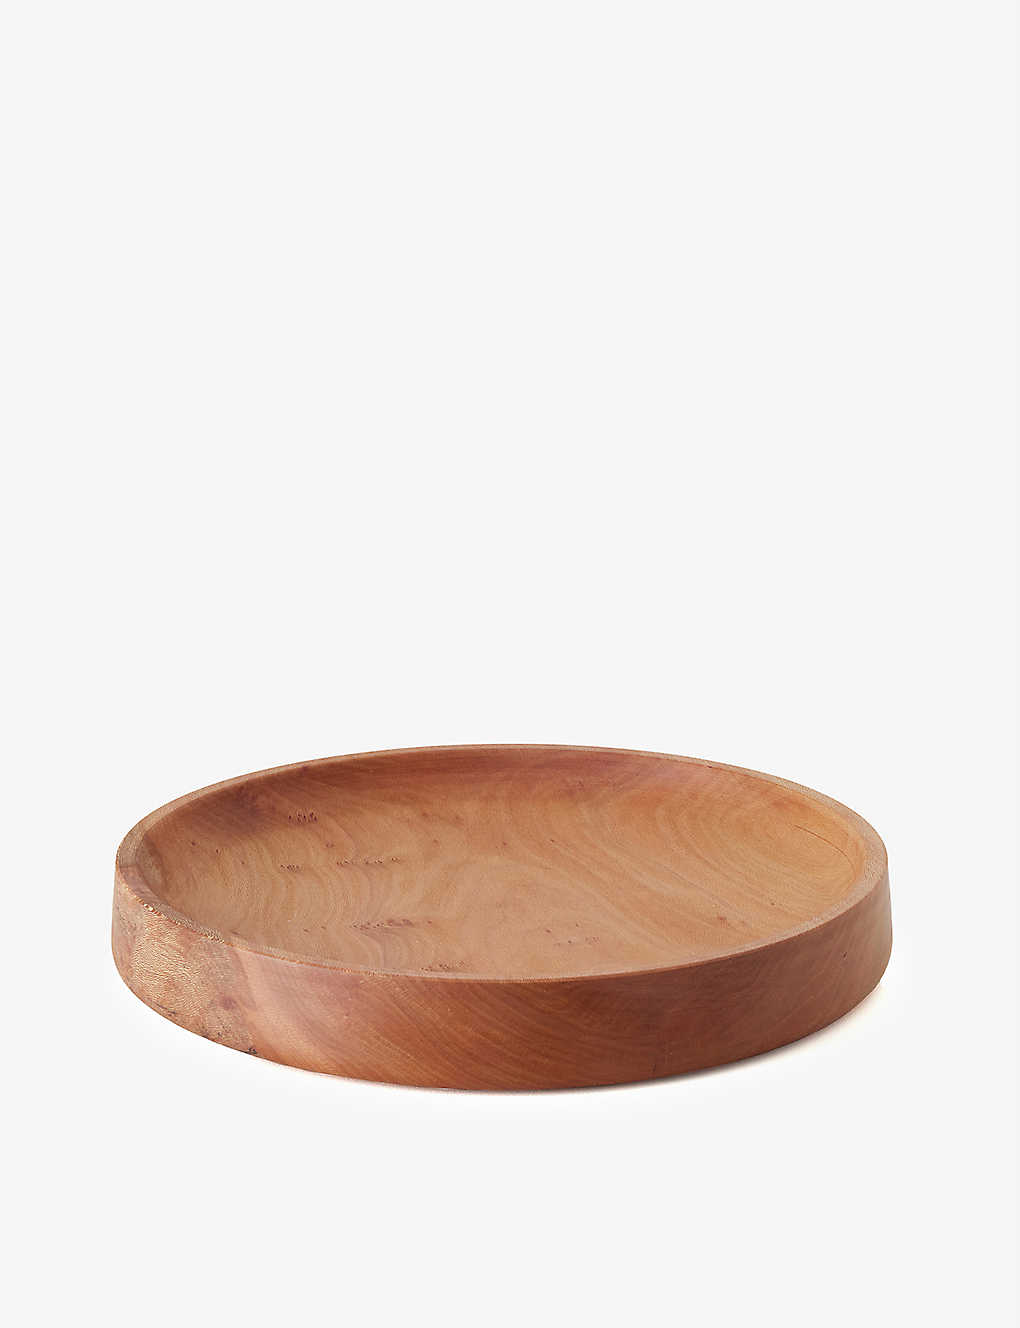 楽天Global HomesGOLDFINGER グレインド 限定版 アップサイクルウッド ボウル 35cm Grained limited-edition upcycled-wood bowl 35cm